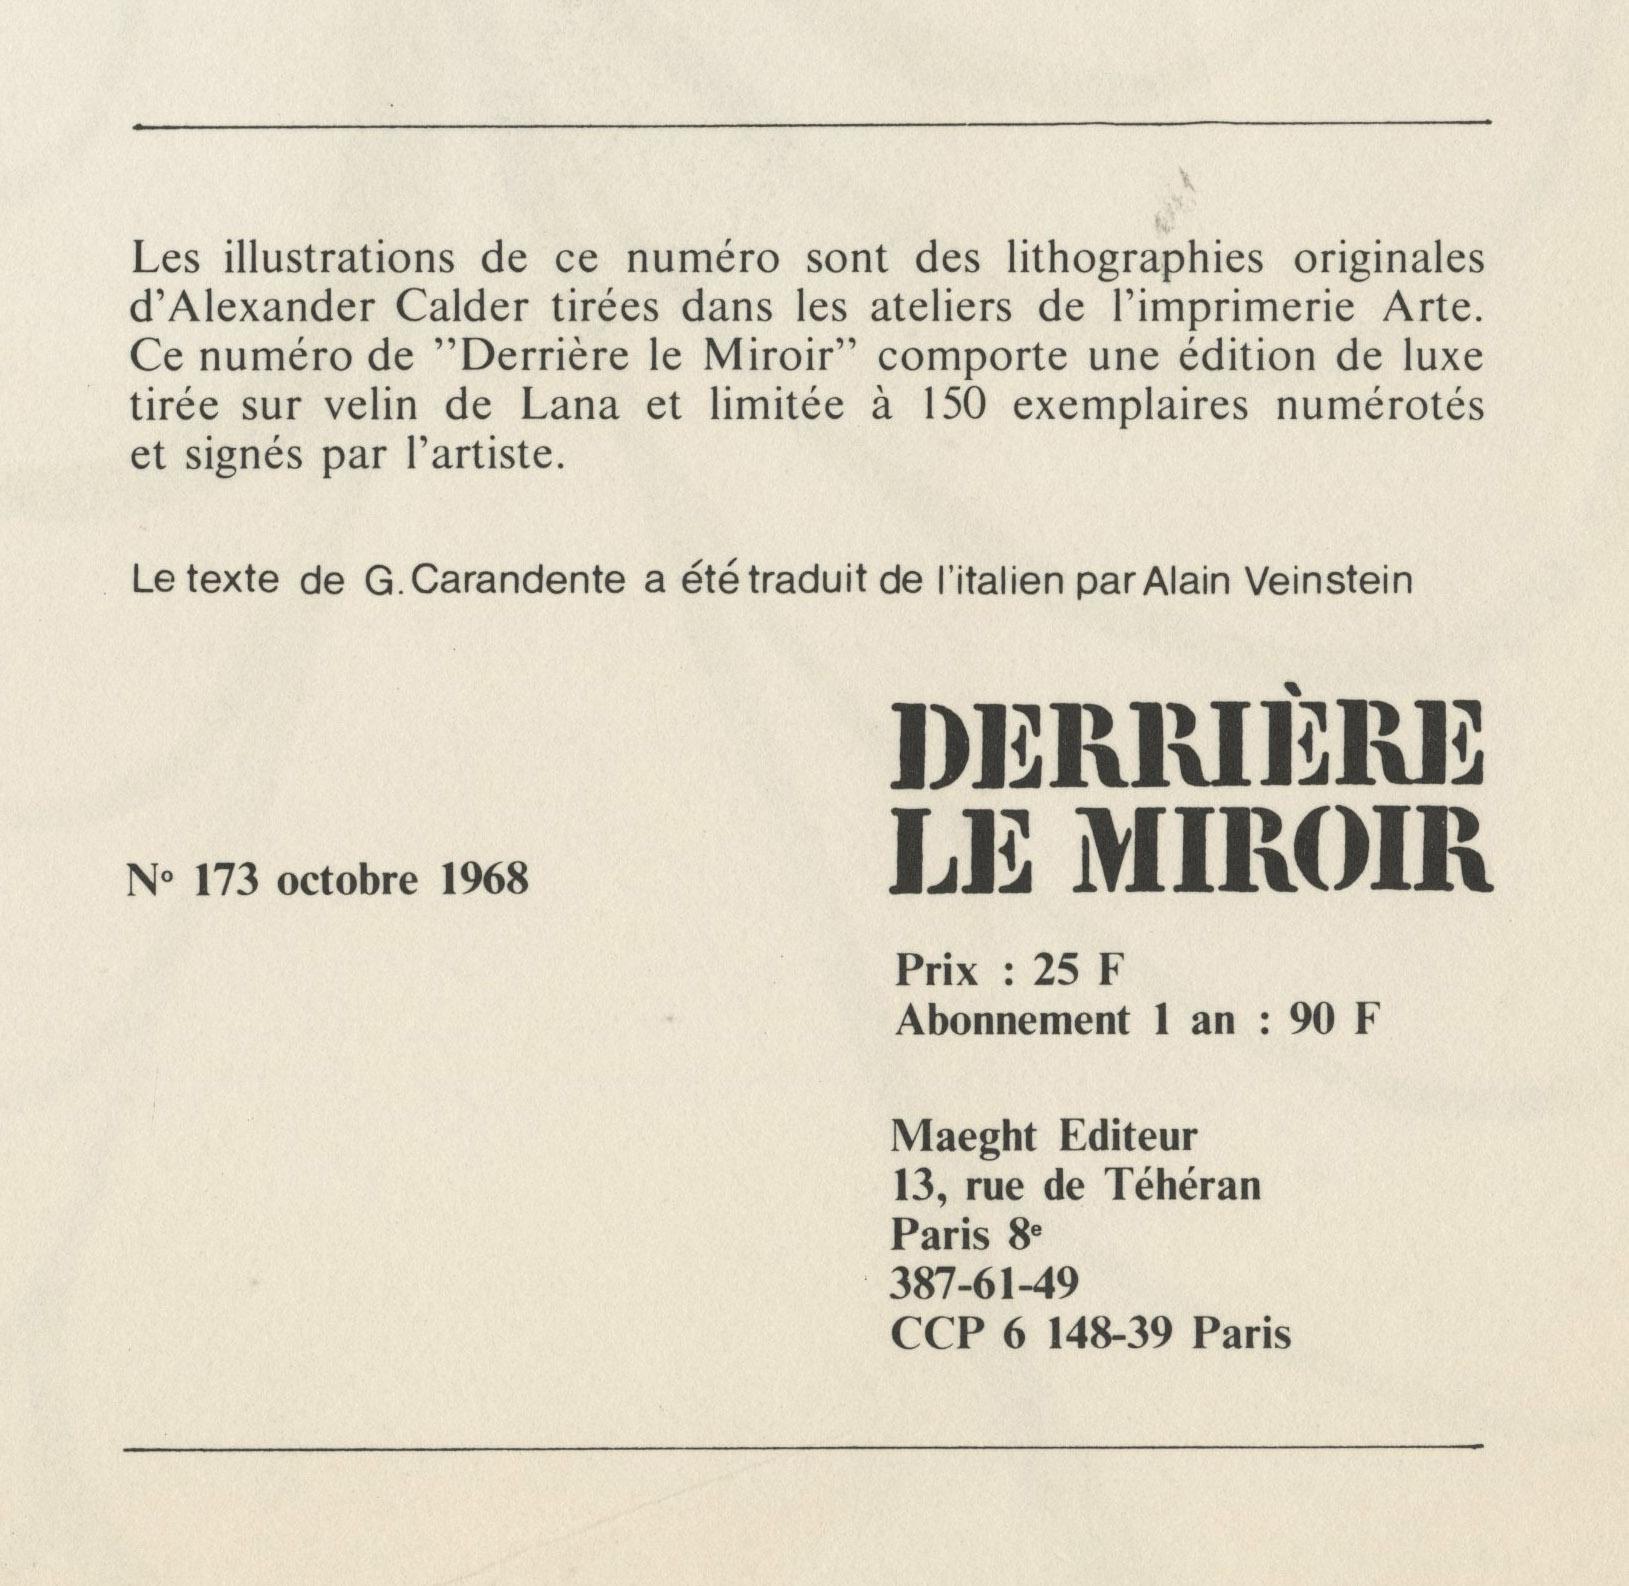 Deckel für DLM Nr. 173 – Print von Alexander Calder